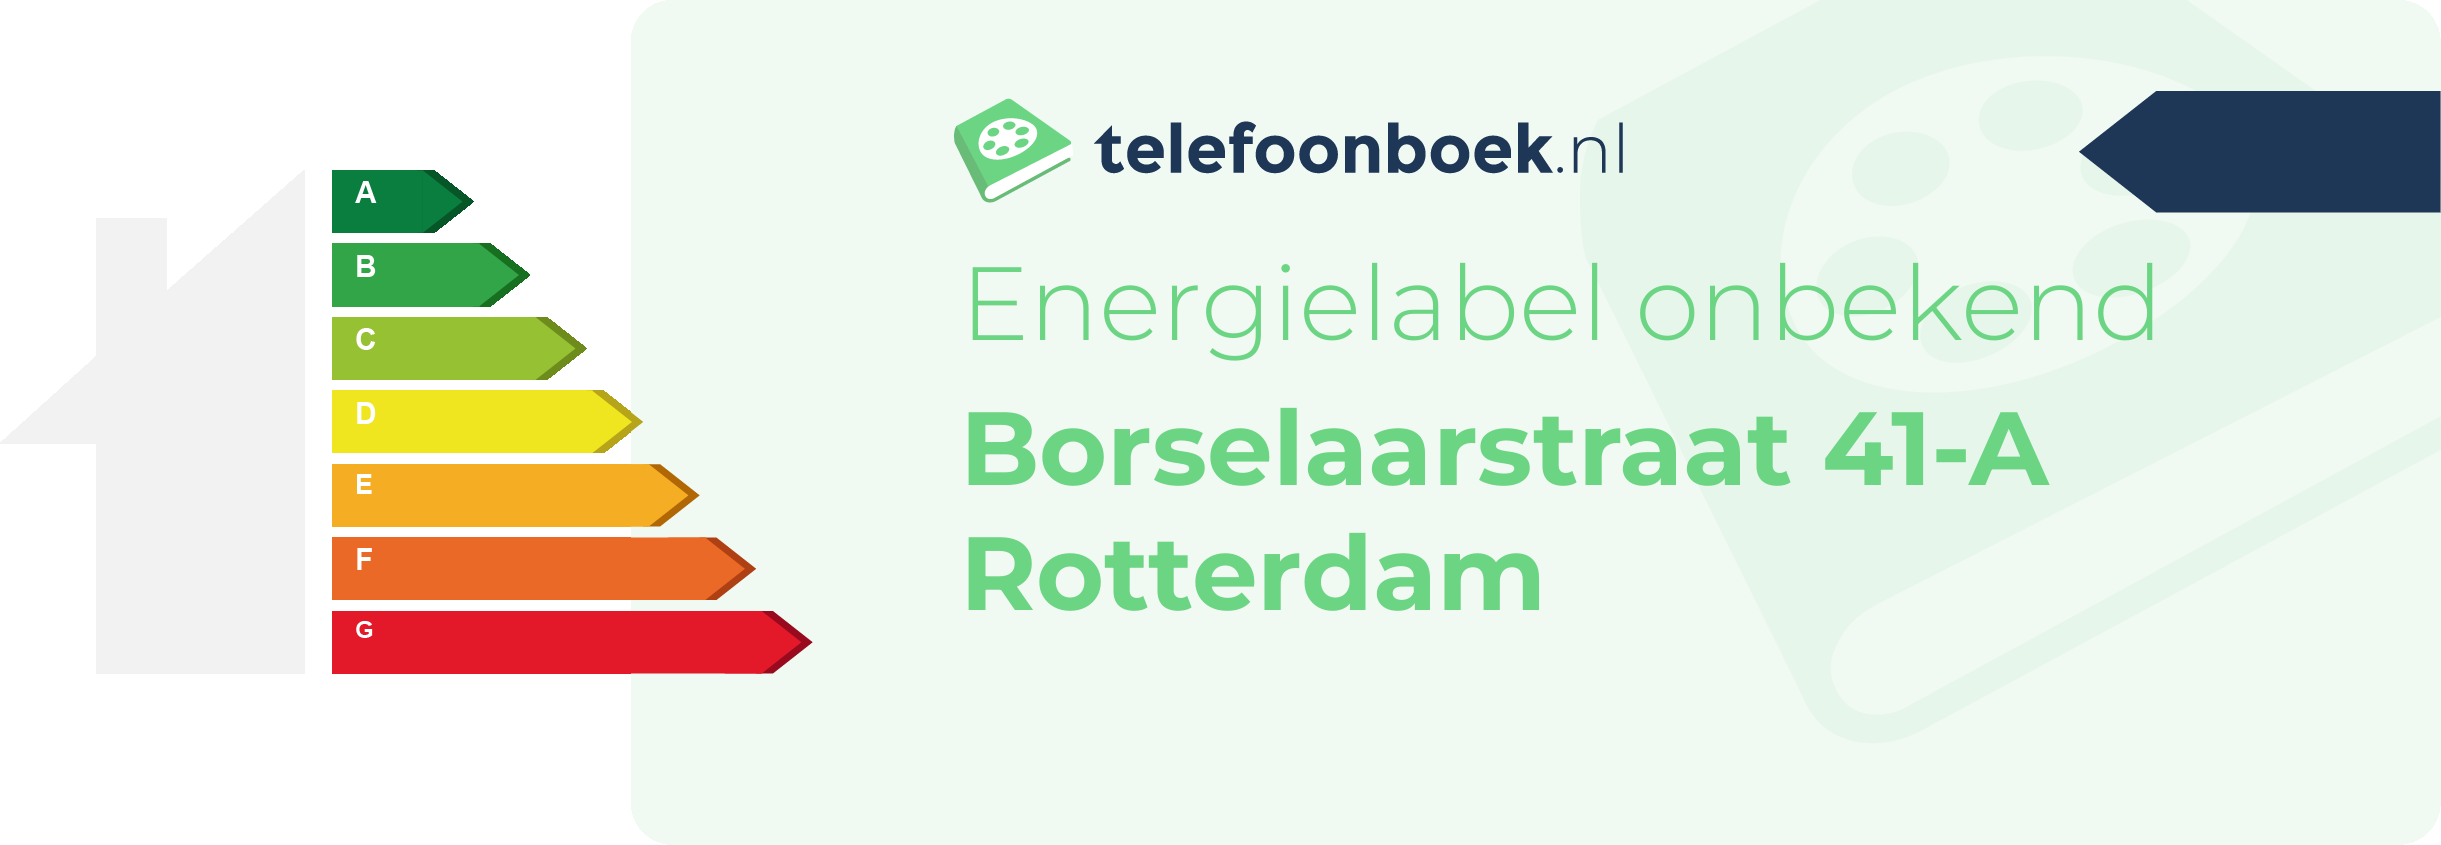 Energielabel Borselaarstraat 41-A Rotterdam